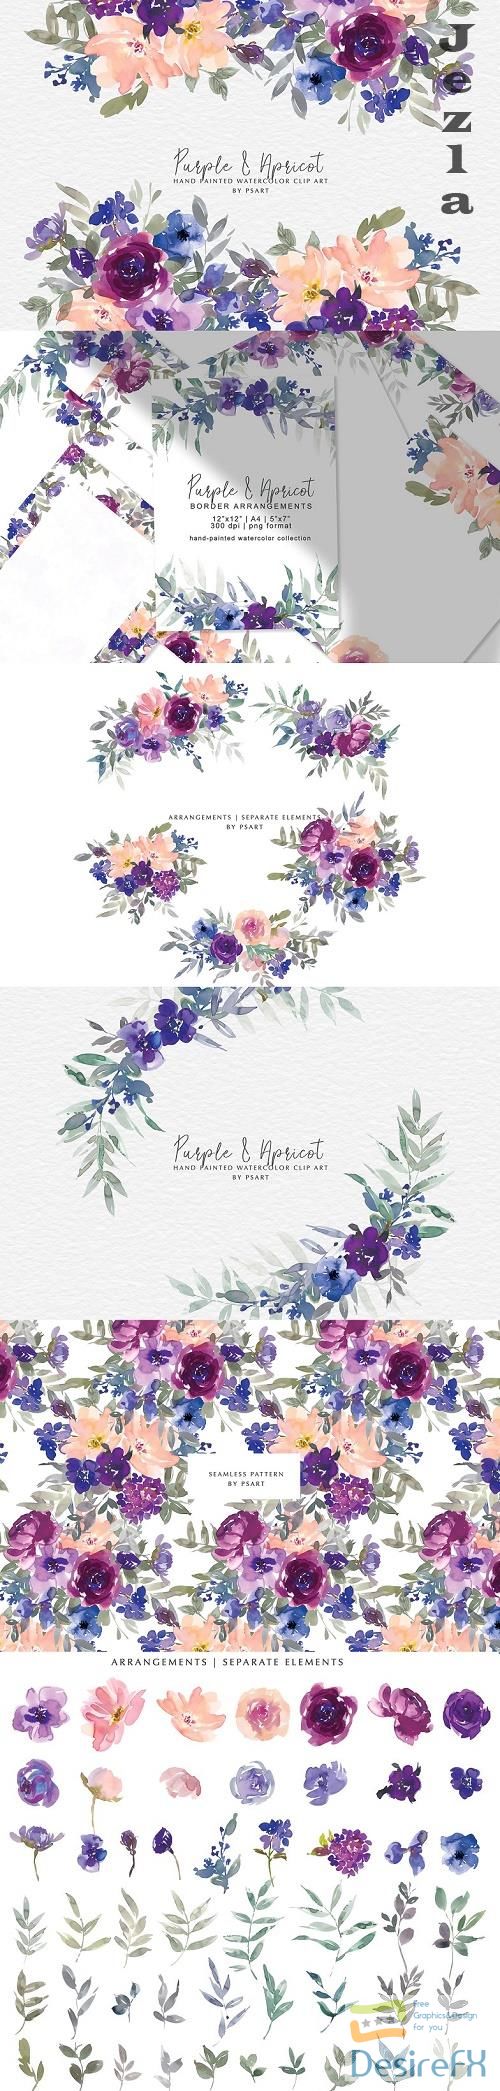 Purple Watercolor Floral Clip Art - 4819455